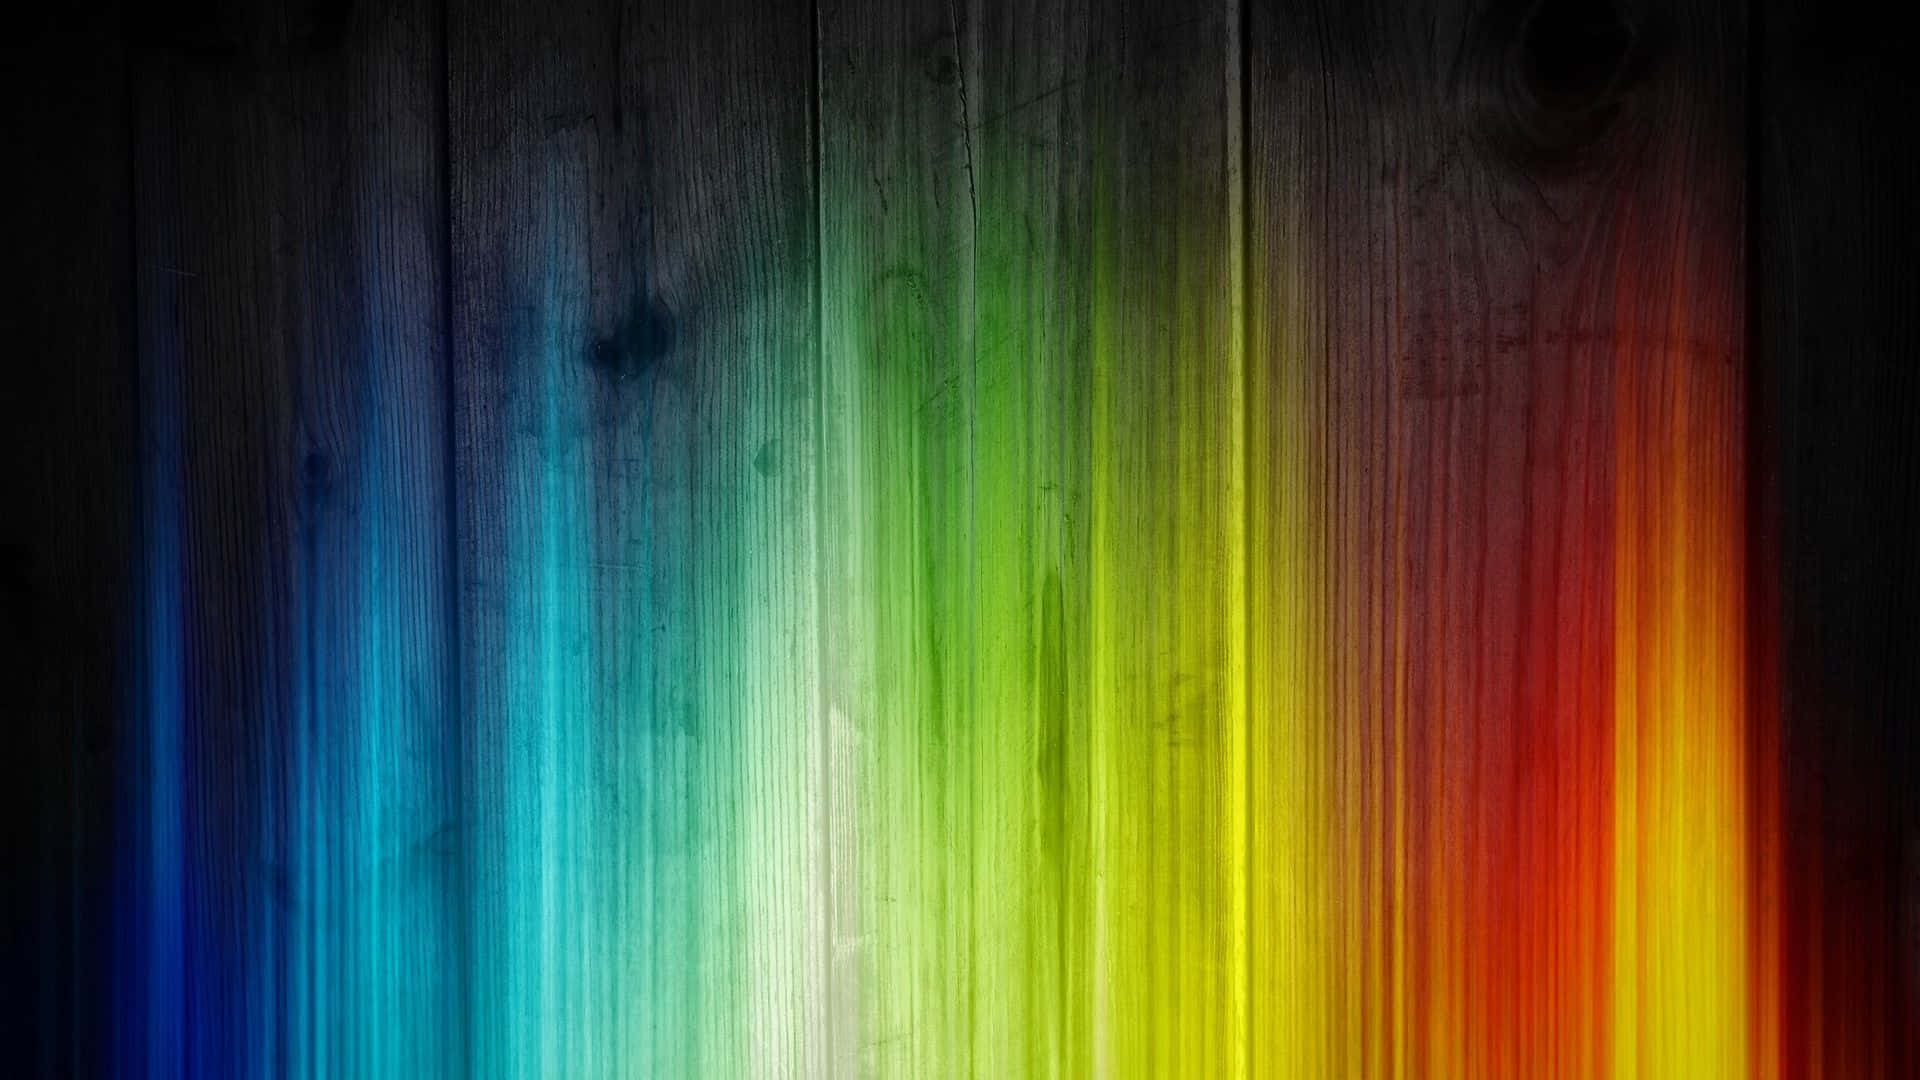 Umafaixa De Arco-íris Colorido Em Um Fundo De Madeira Papel de Parede